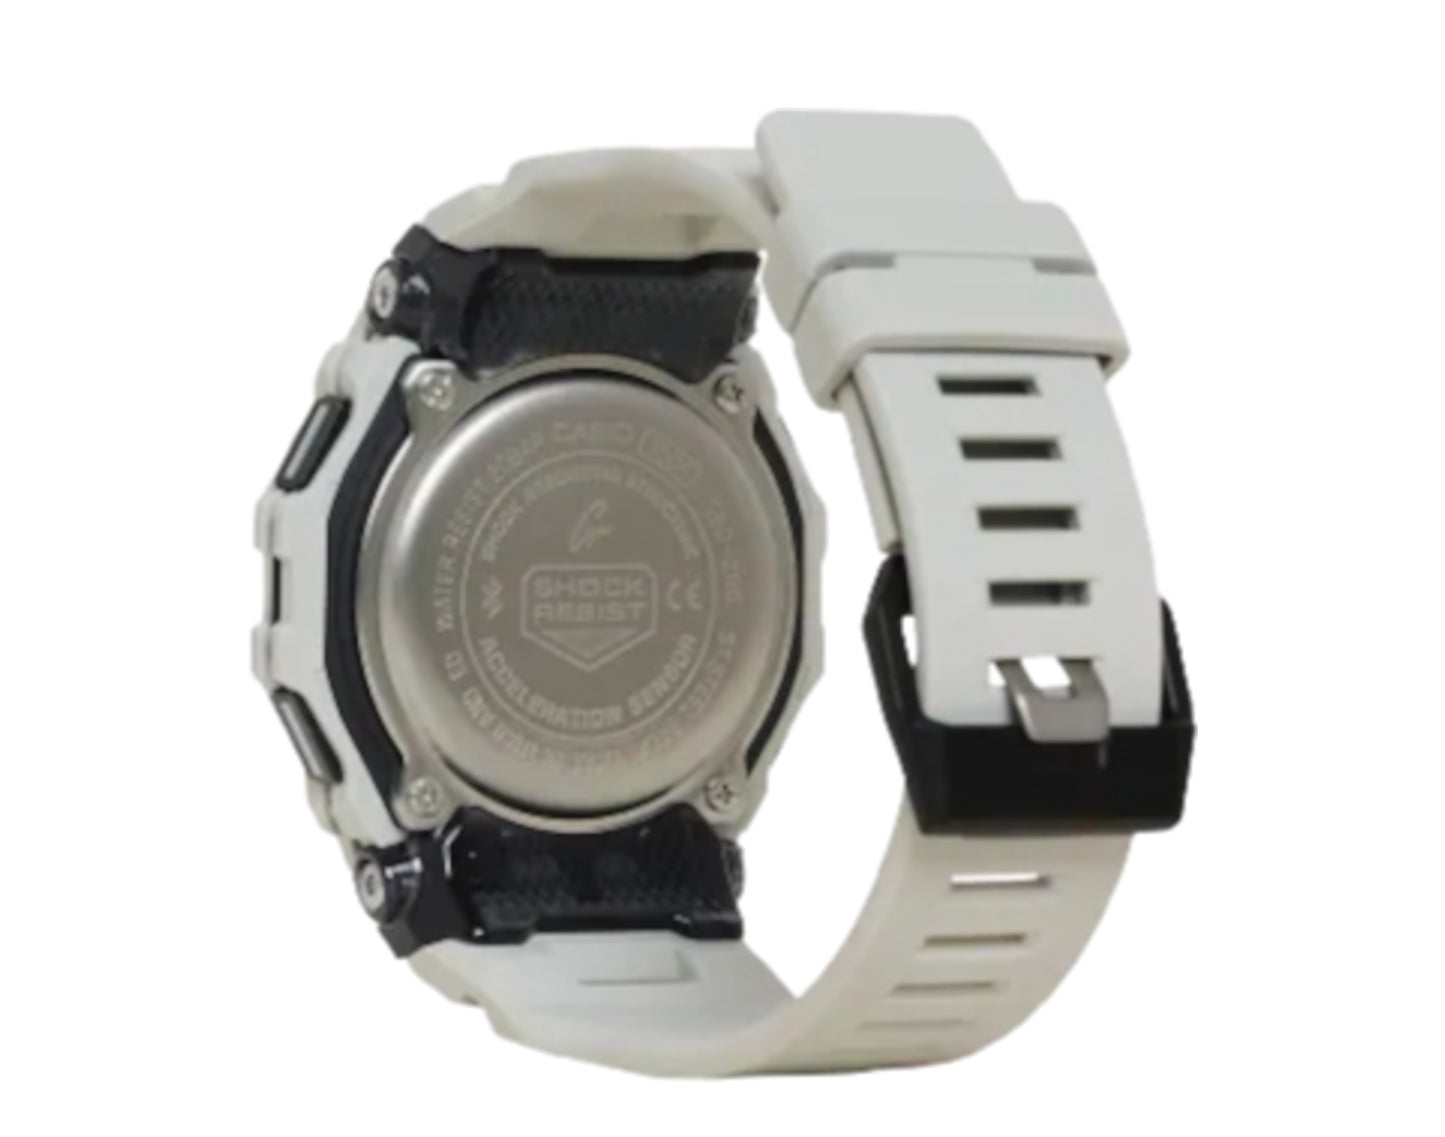 Casio G-Shock GBD200UU Digital Sport Watch